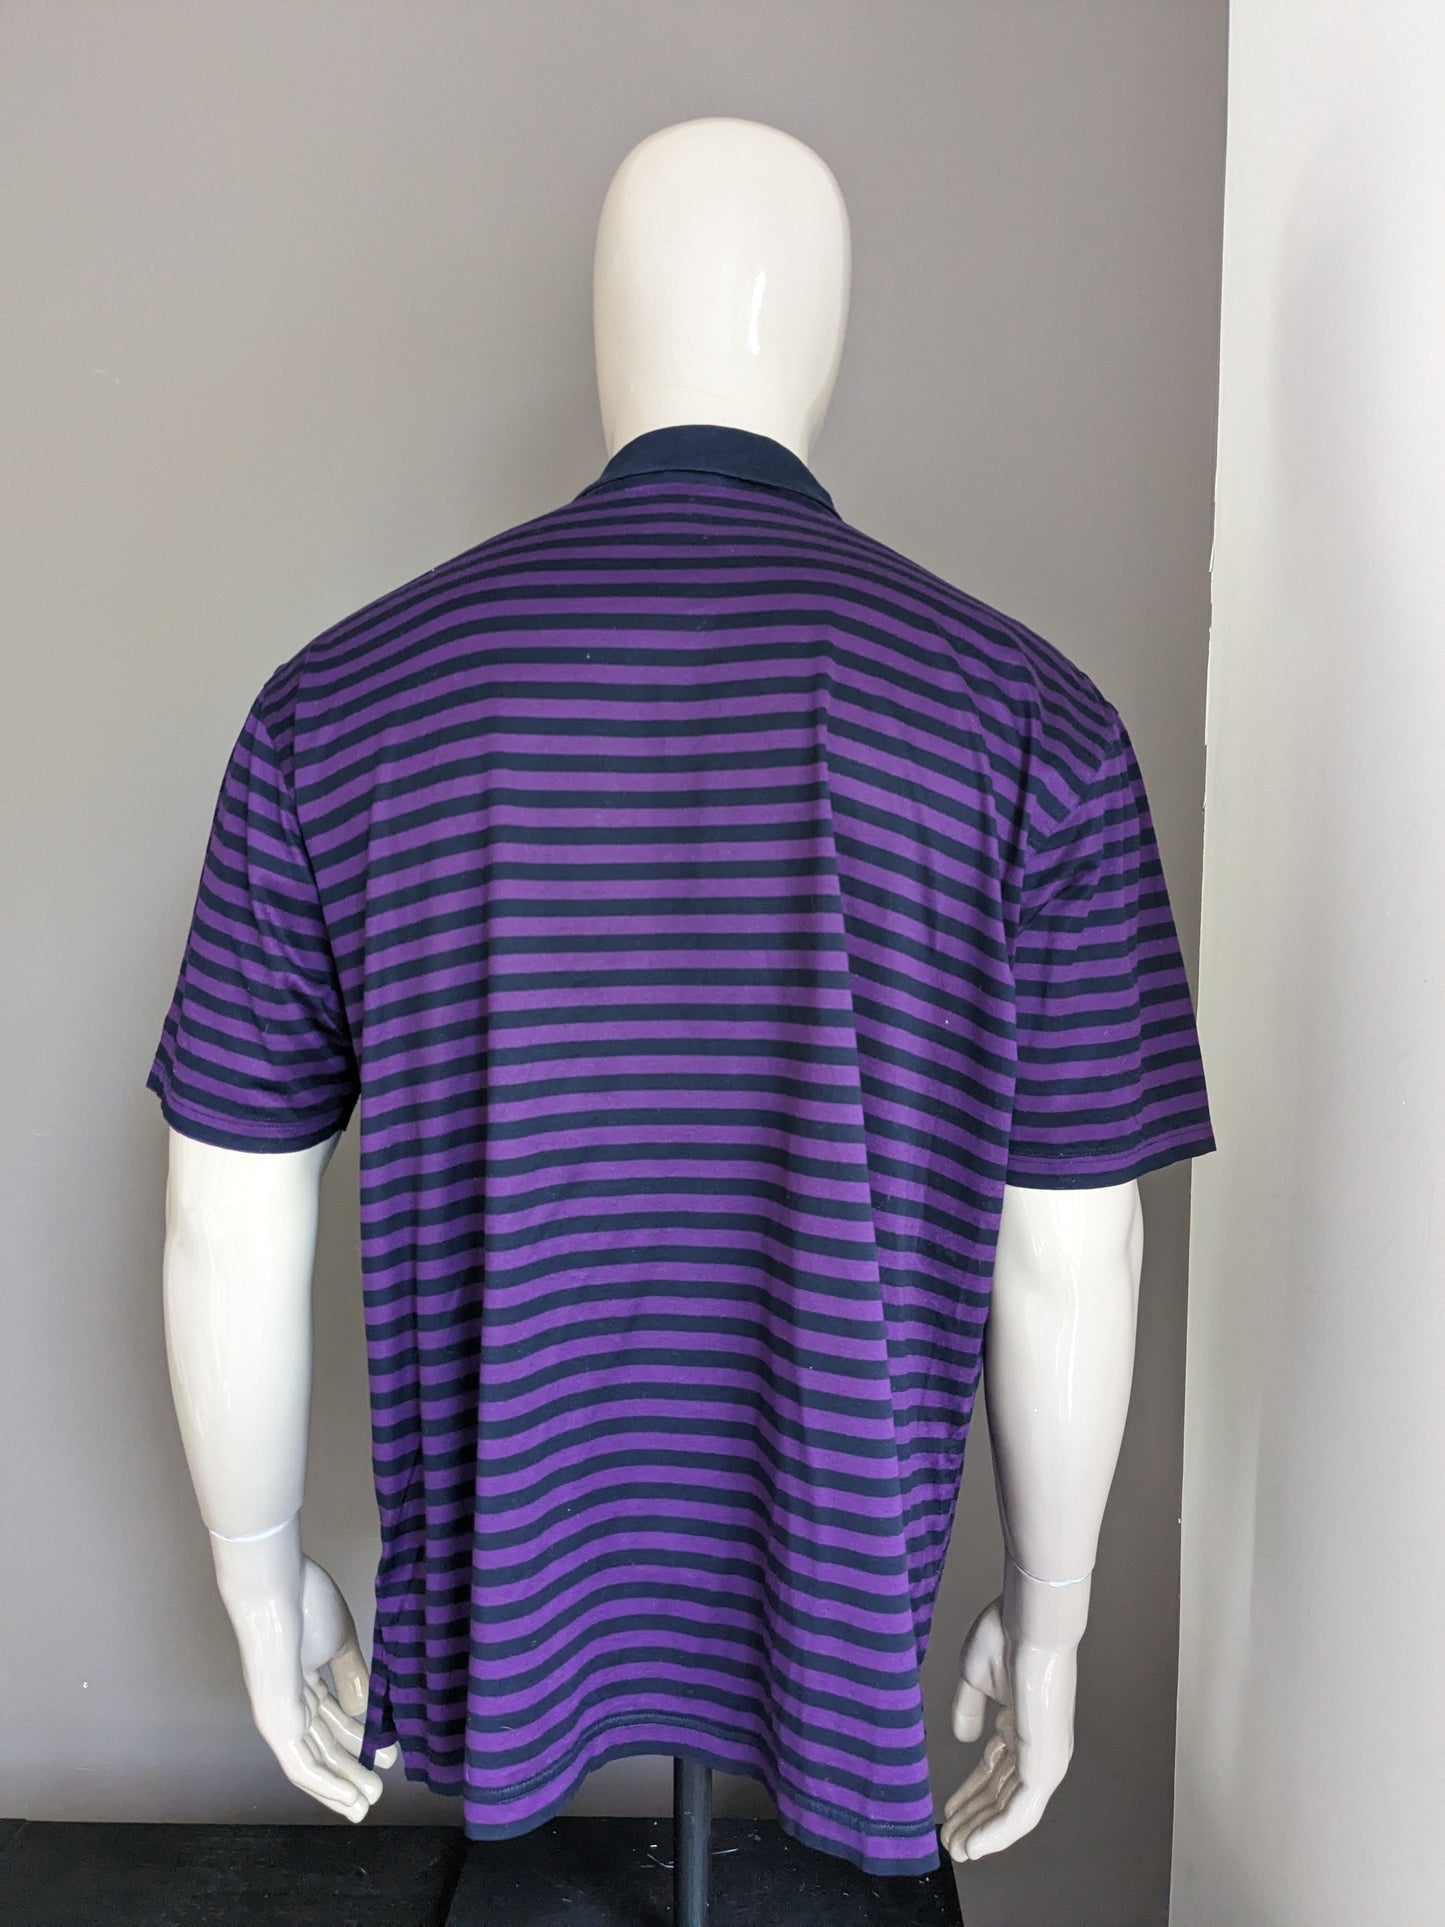 Baileys Polo. Purple black striped. Size 3XL / XXXL.